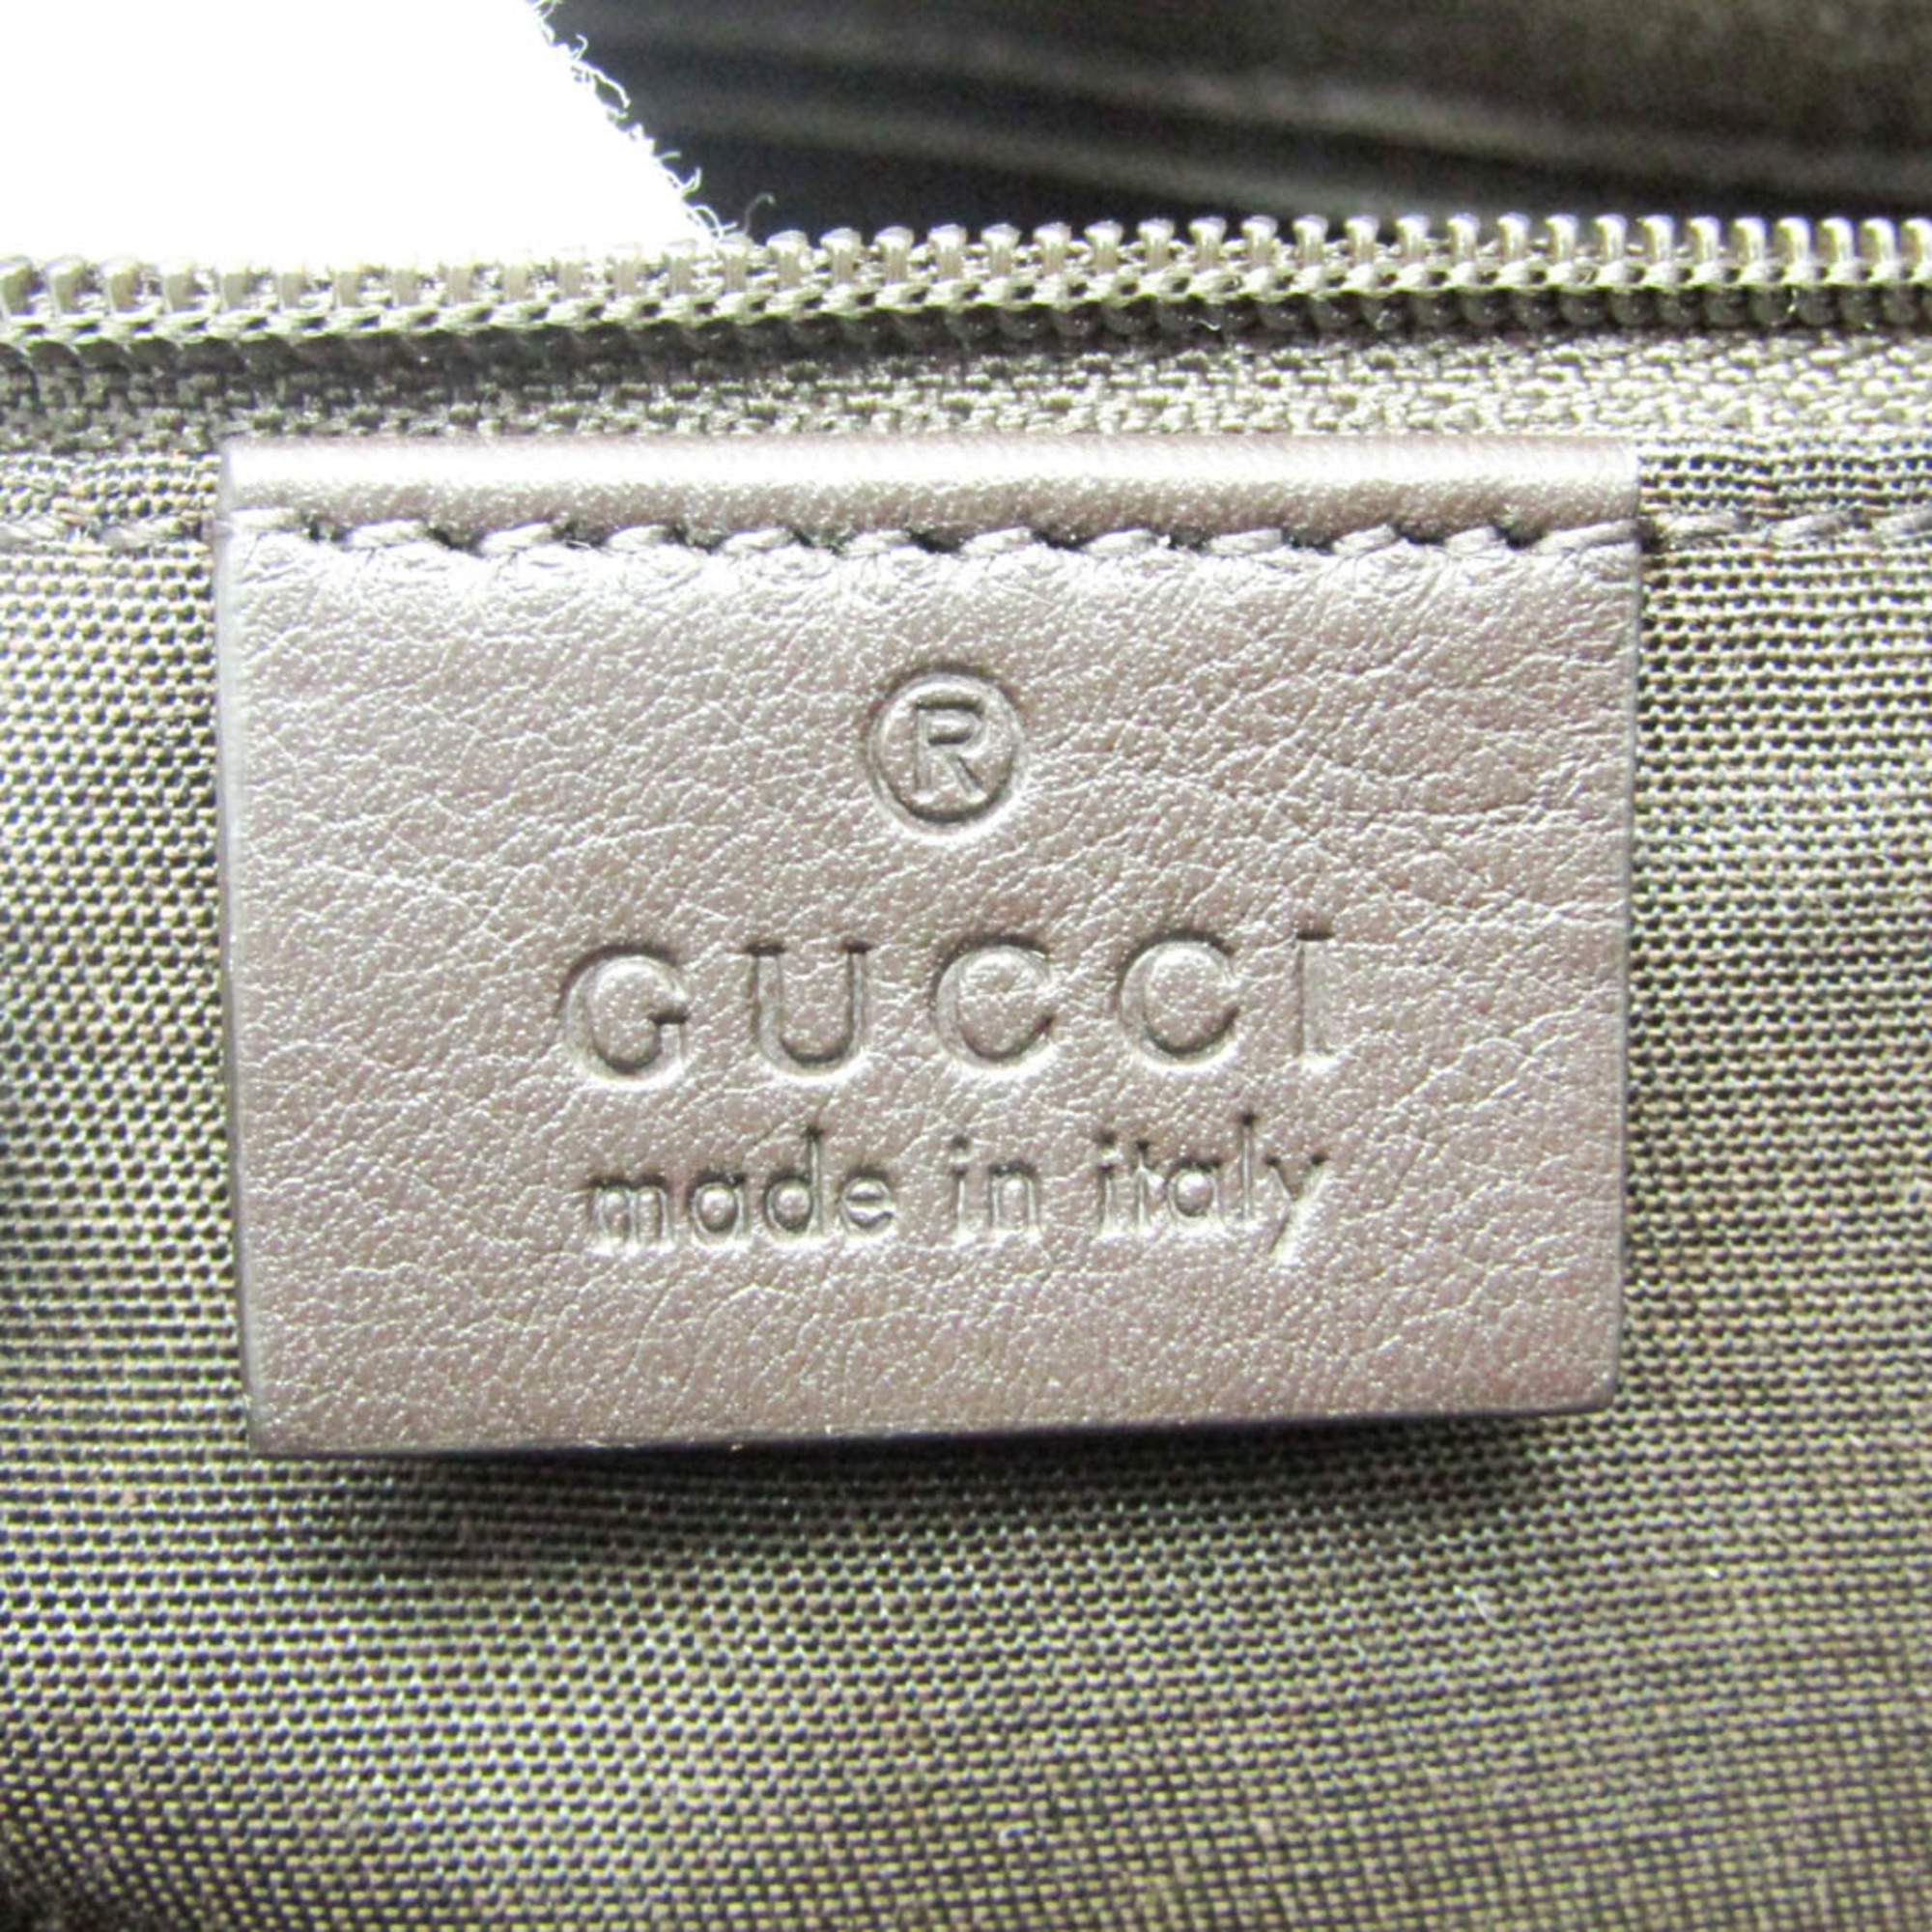 グッチ(Gucci) GGキャンバス 388919 レディース キャンバス,レザー ハンドバッグ ベージュ,ダークブラウン